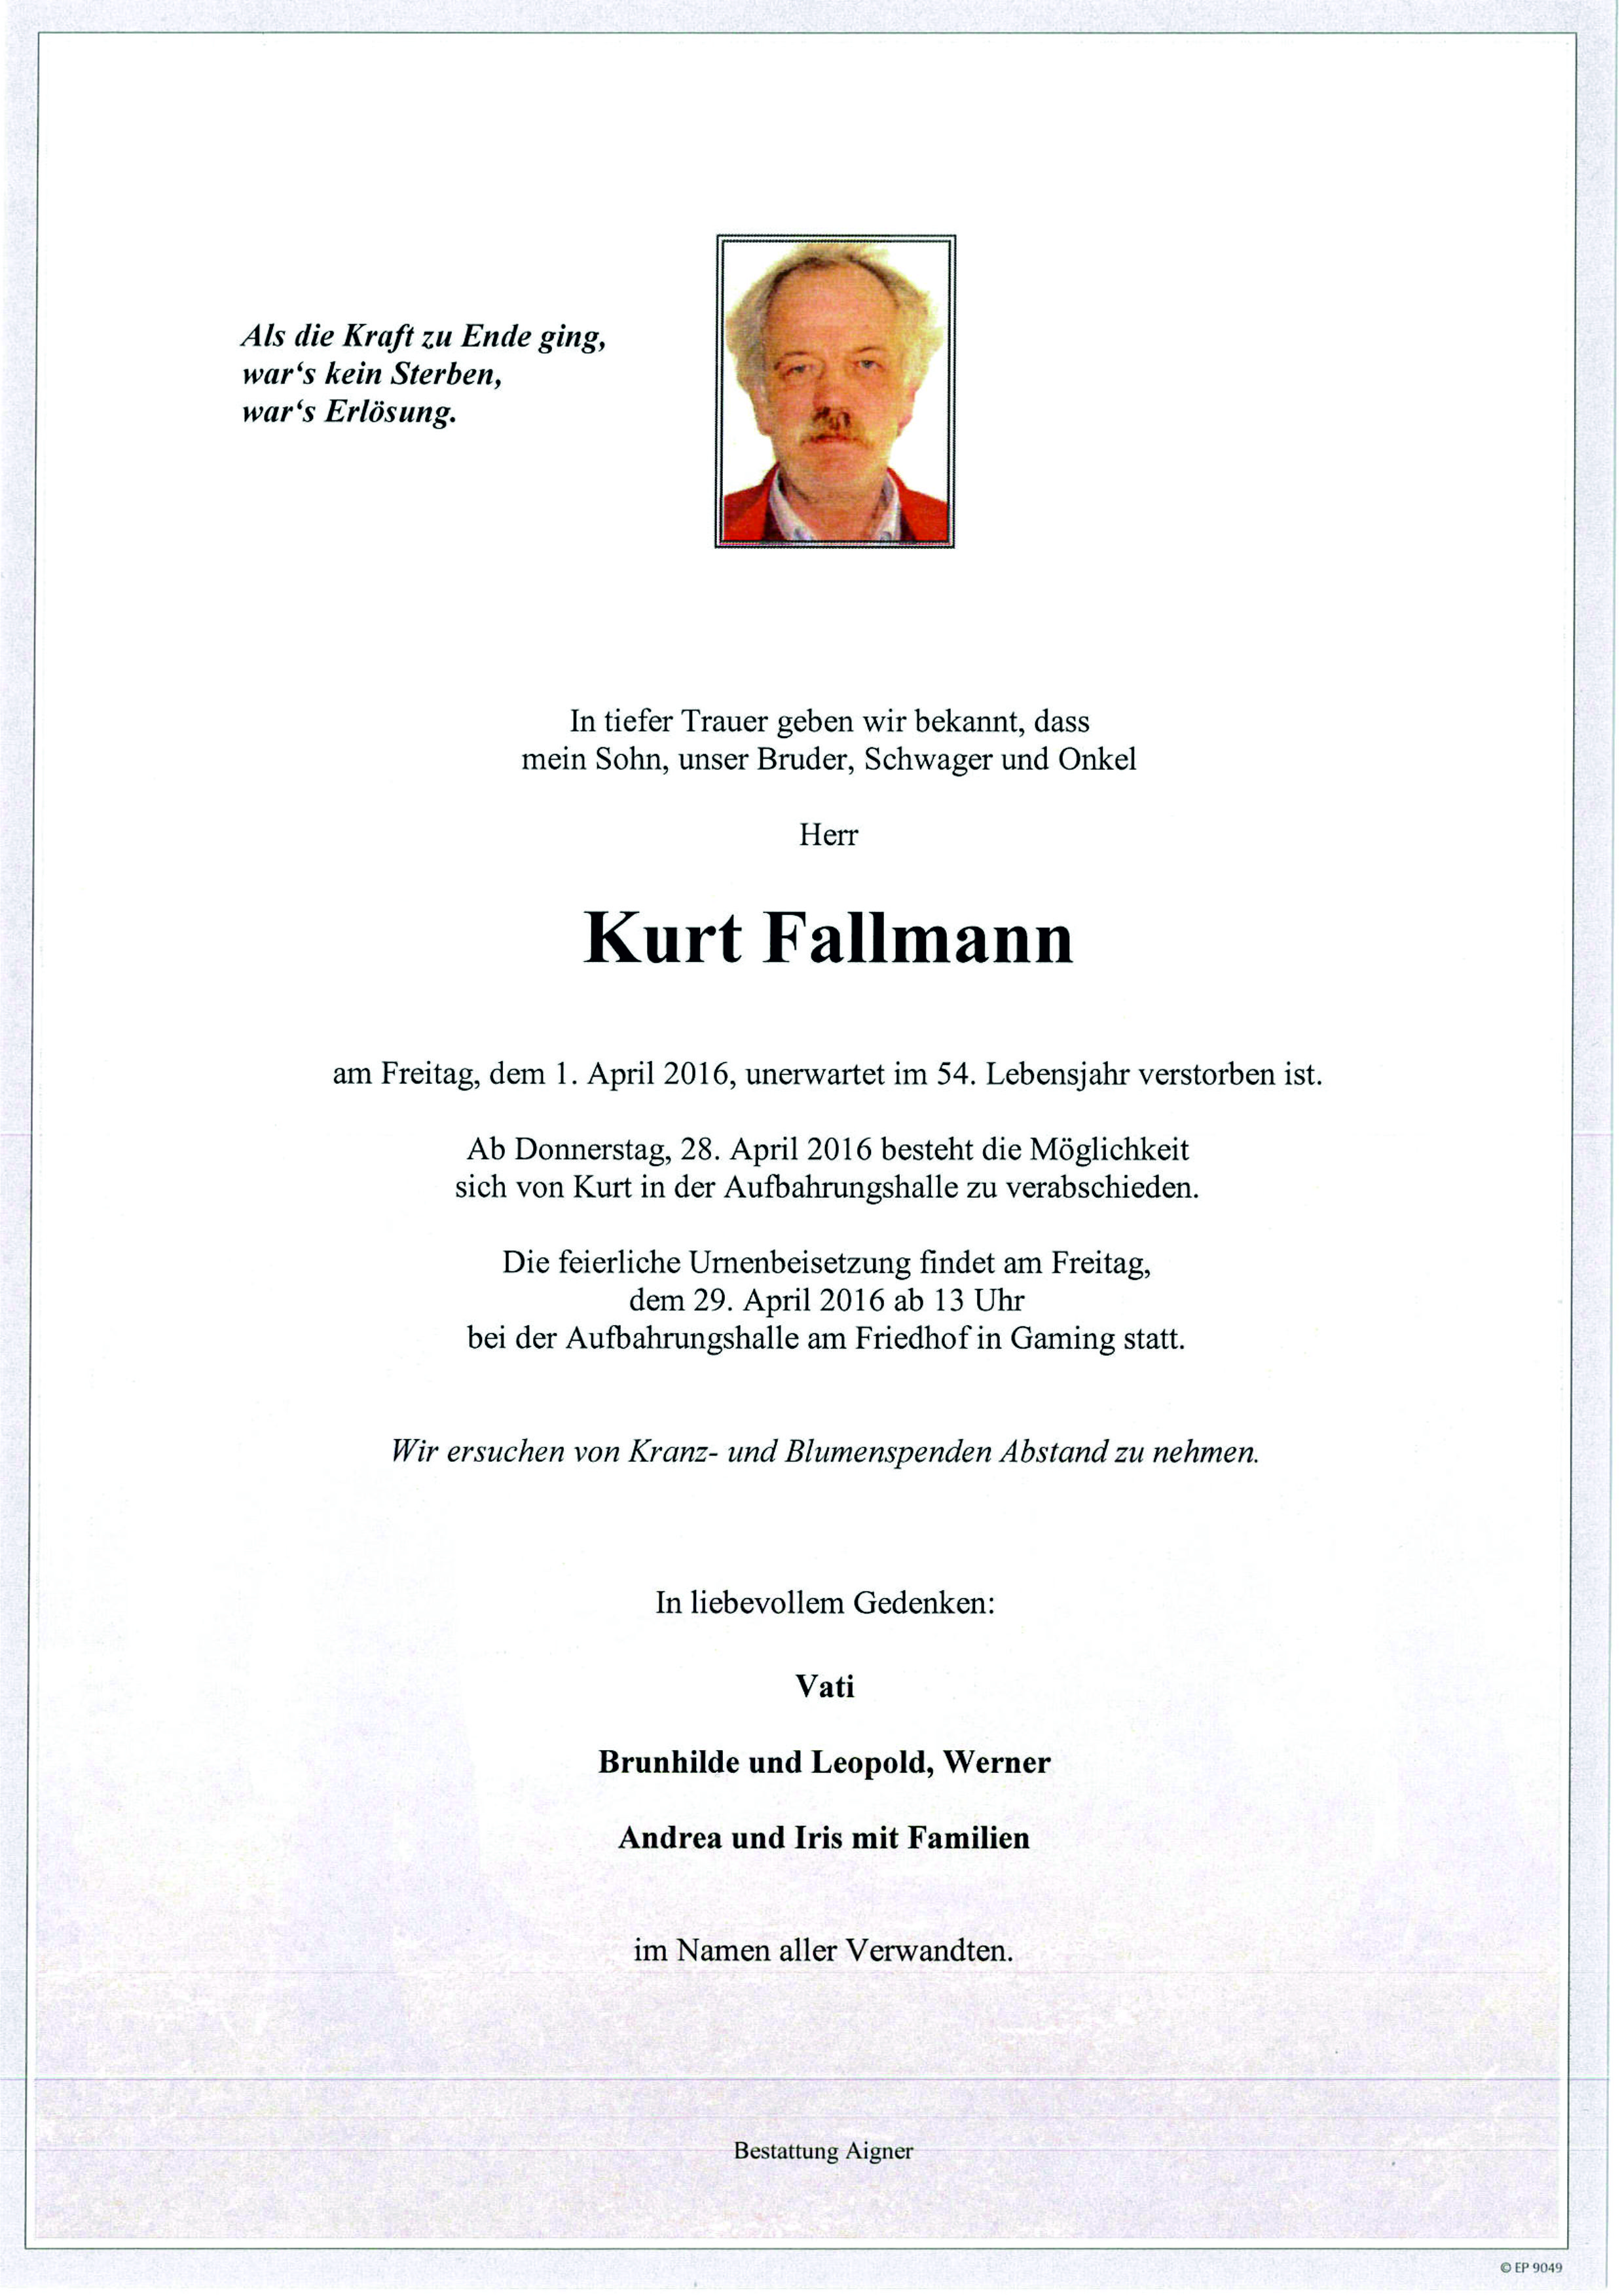 Kurt Fallmann